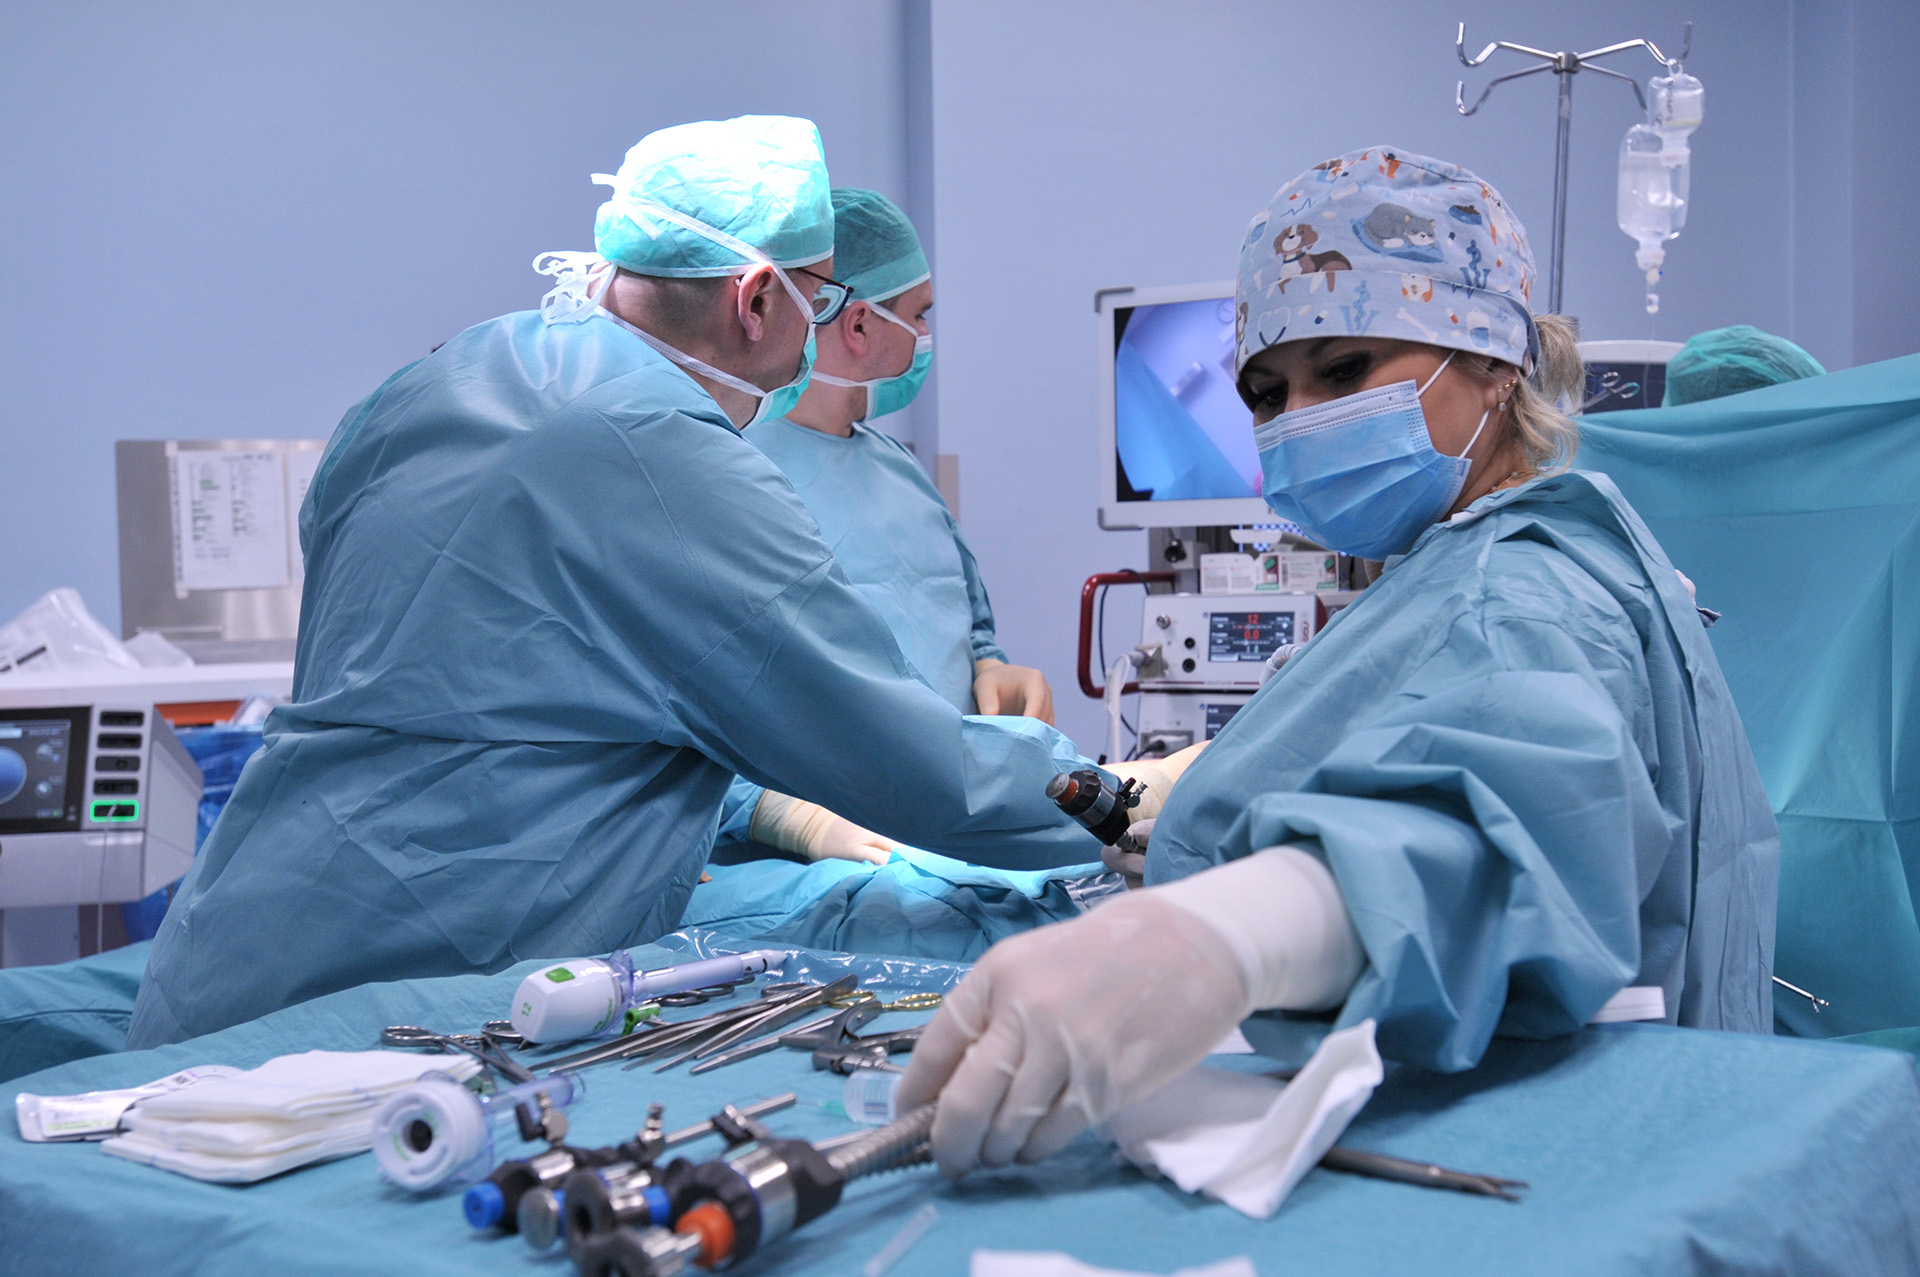 Operacja bariatryczna (rękawowa resekcja żołądka) w Szpitalu